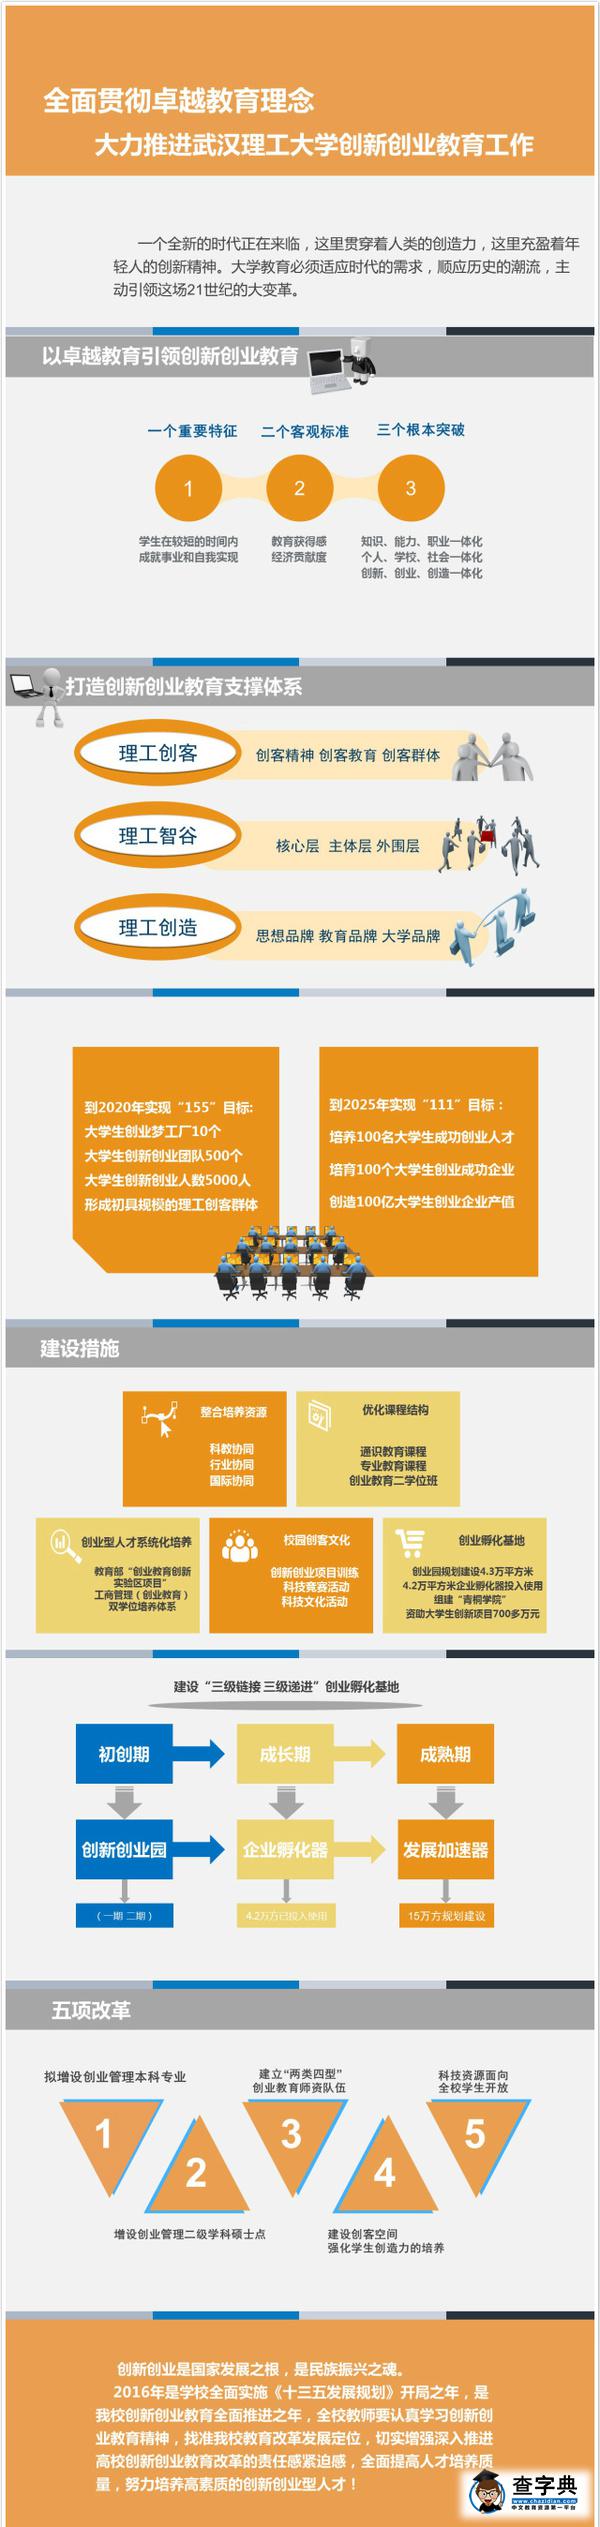 一张图读懂武汉理工大学创新创业教育2